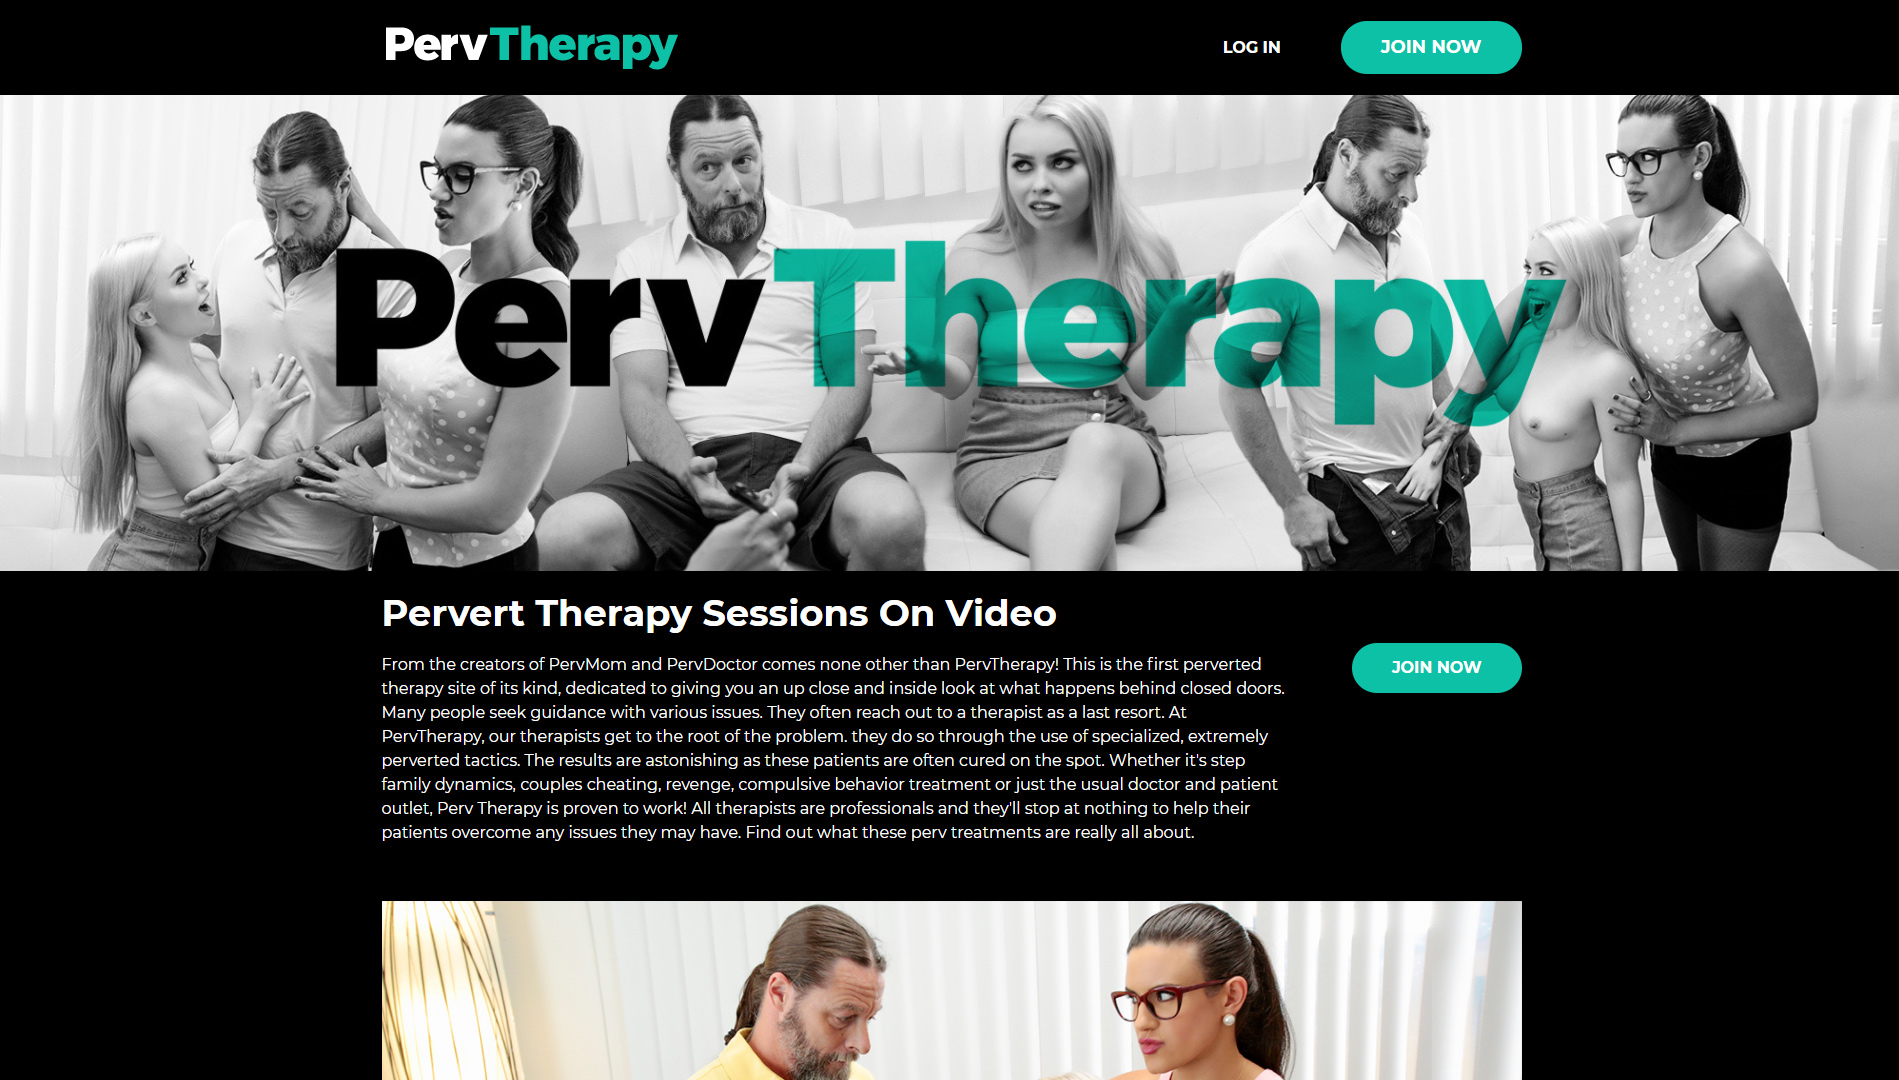 New Porn Site: Perv Therapy